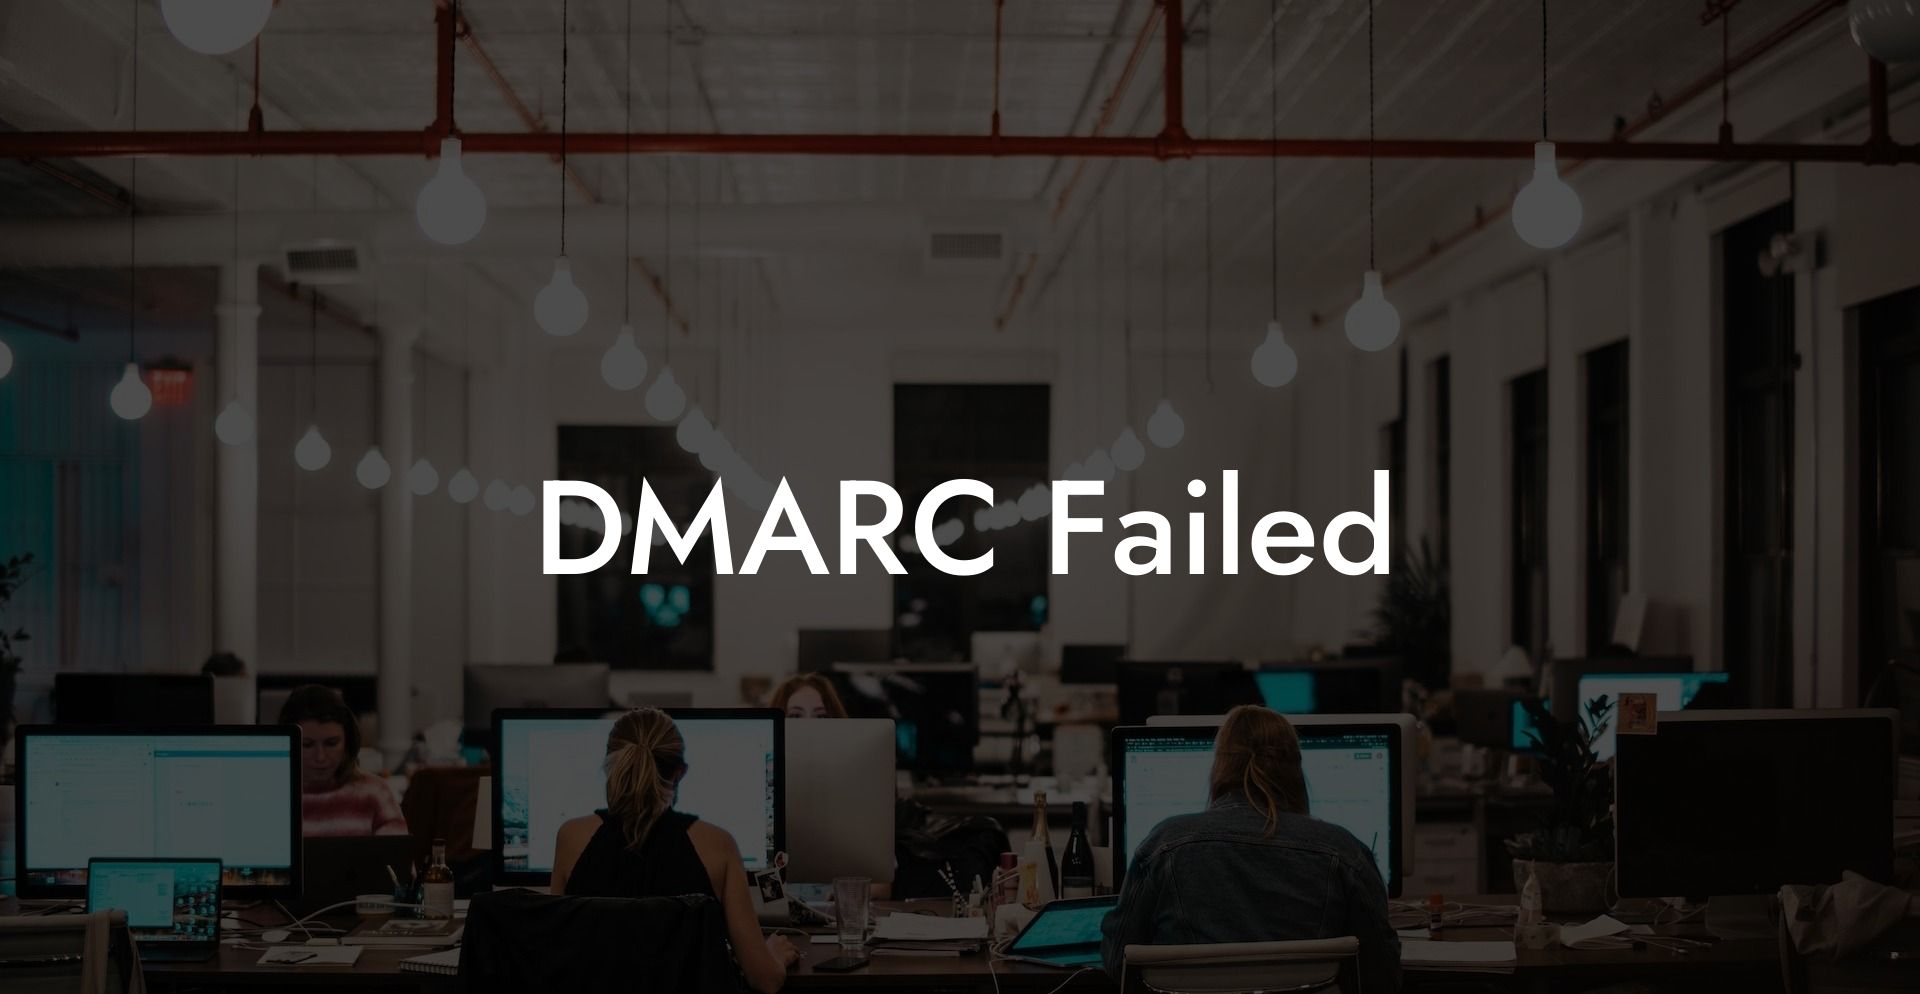 DMARC Failed